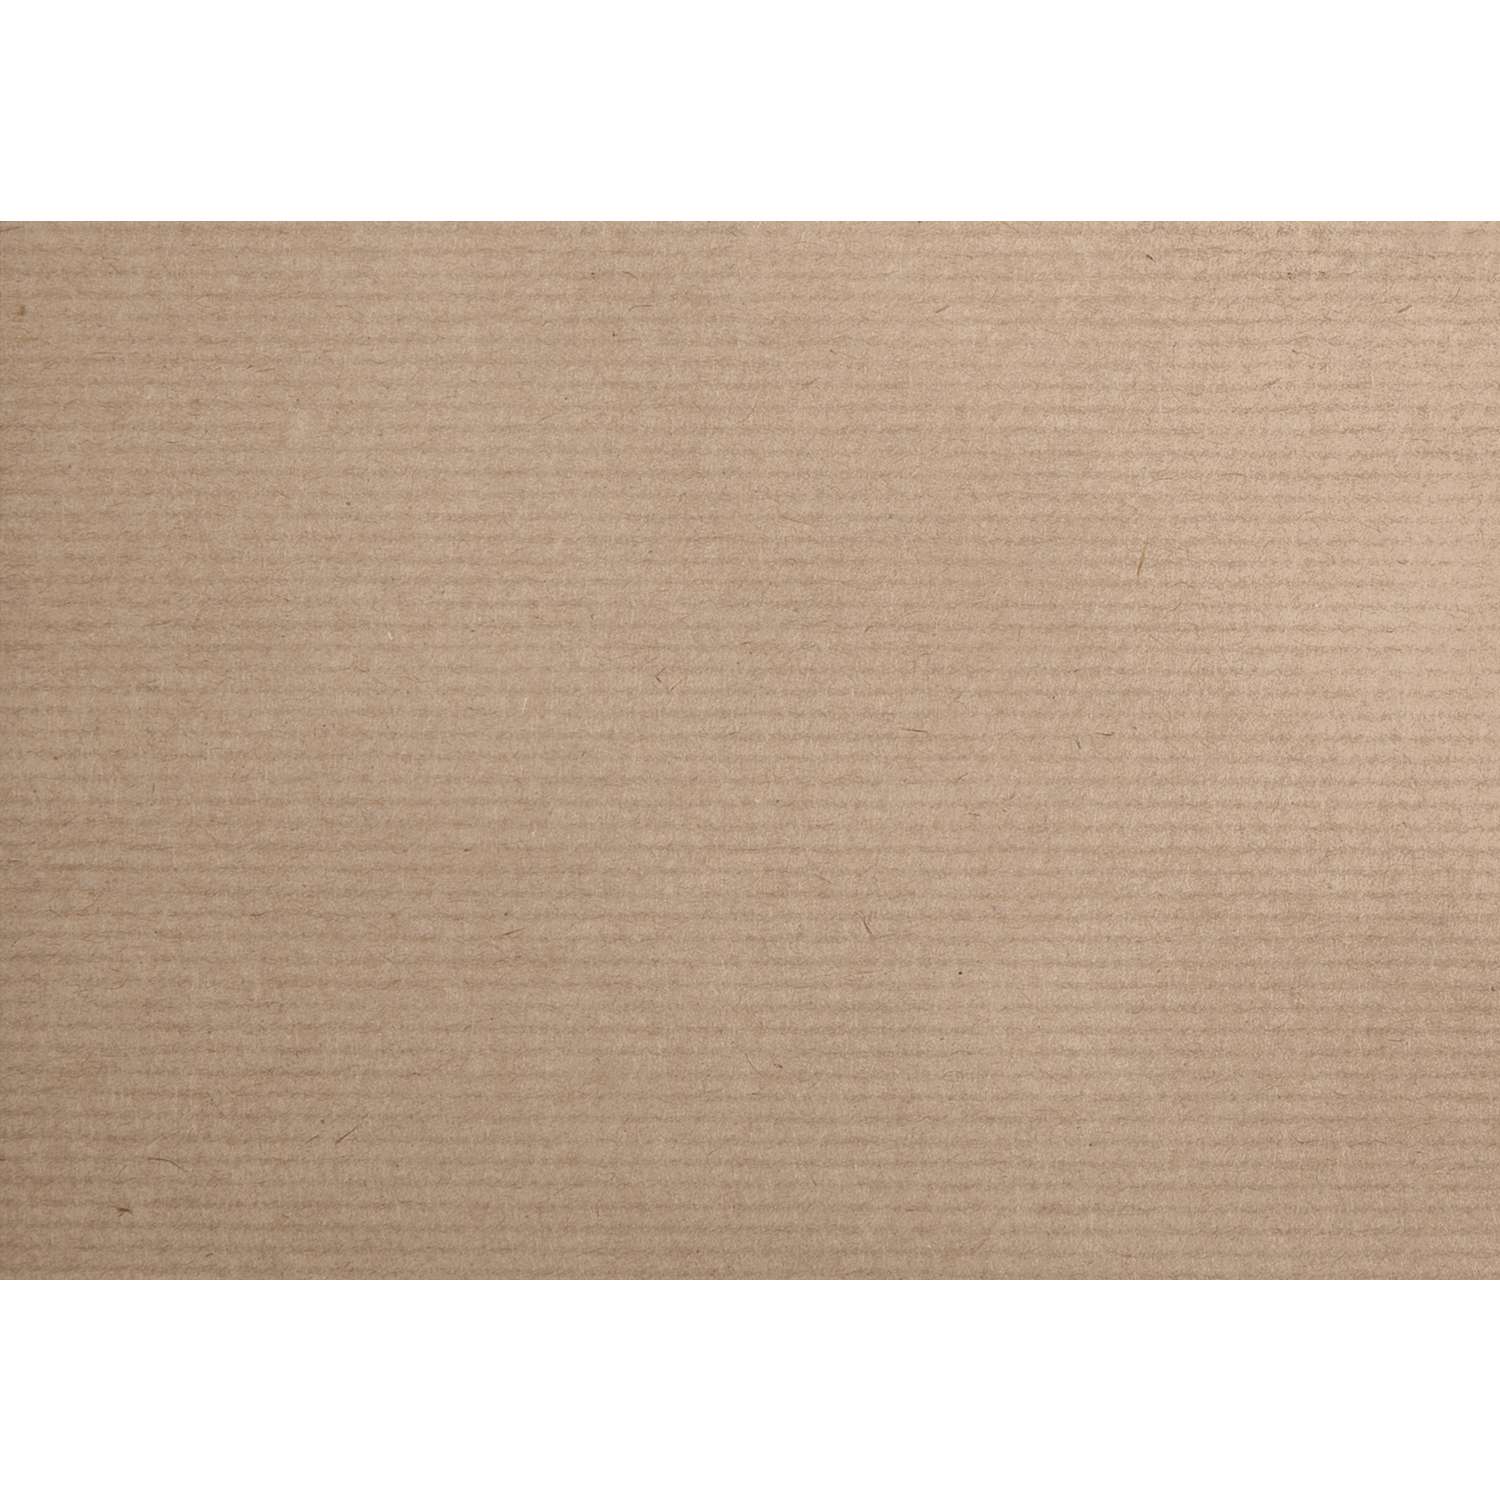 Papier affiche 90 g/m² Tiny rolls Pastel 5 m x 35 cm